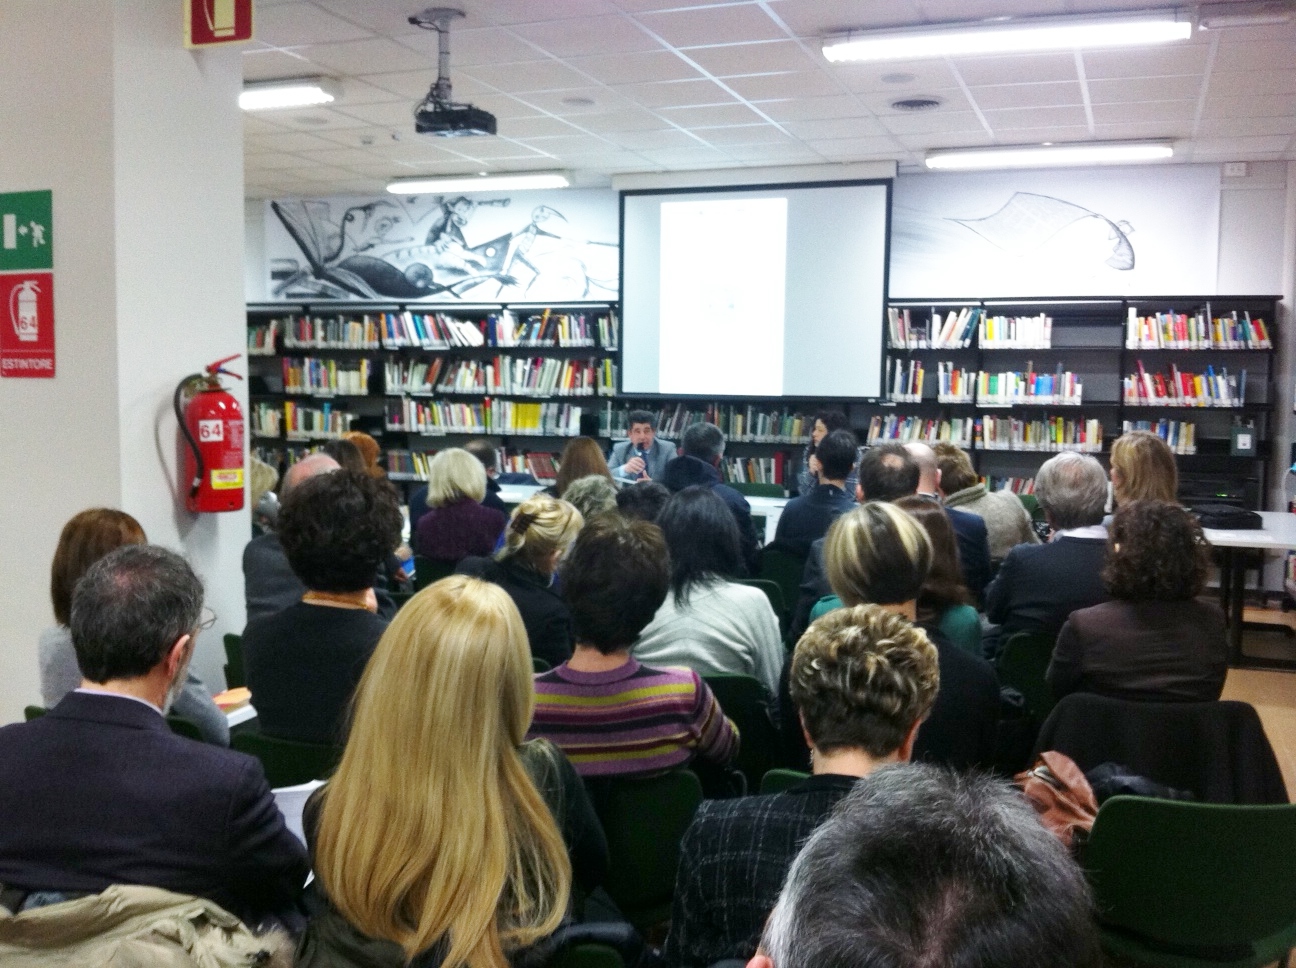 Incontro pubblico sulle biblioteche regionali. Udine, 23 marzo 2013